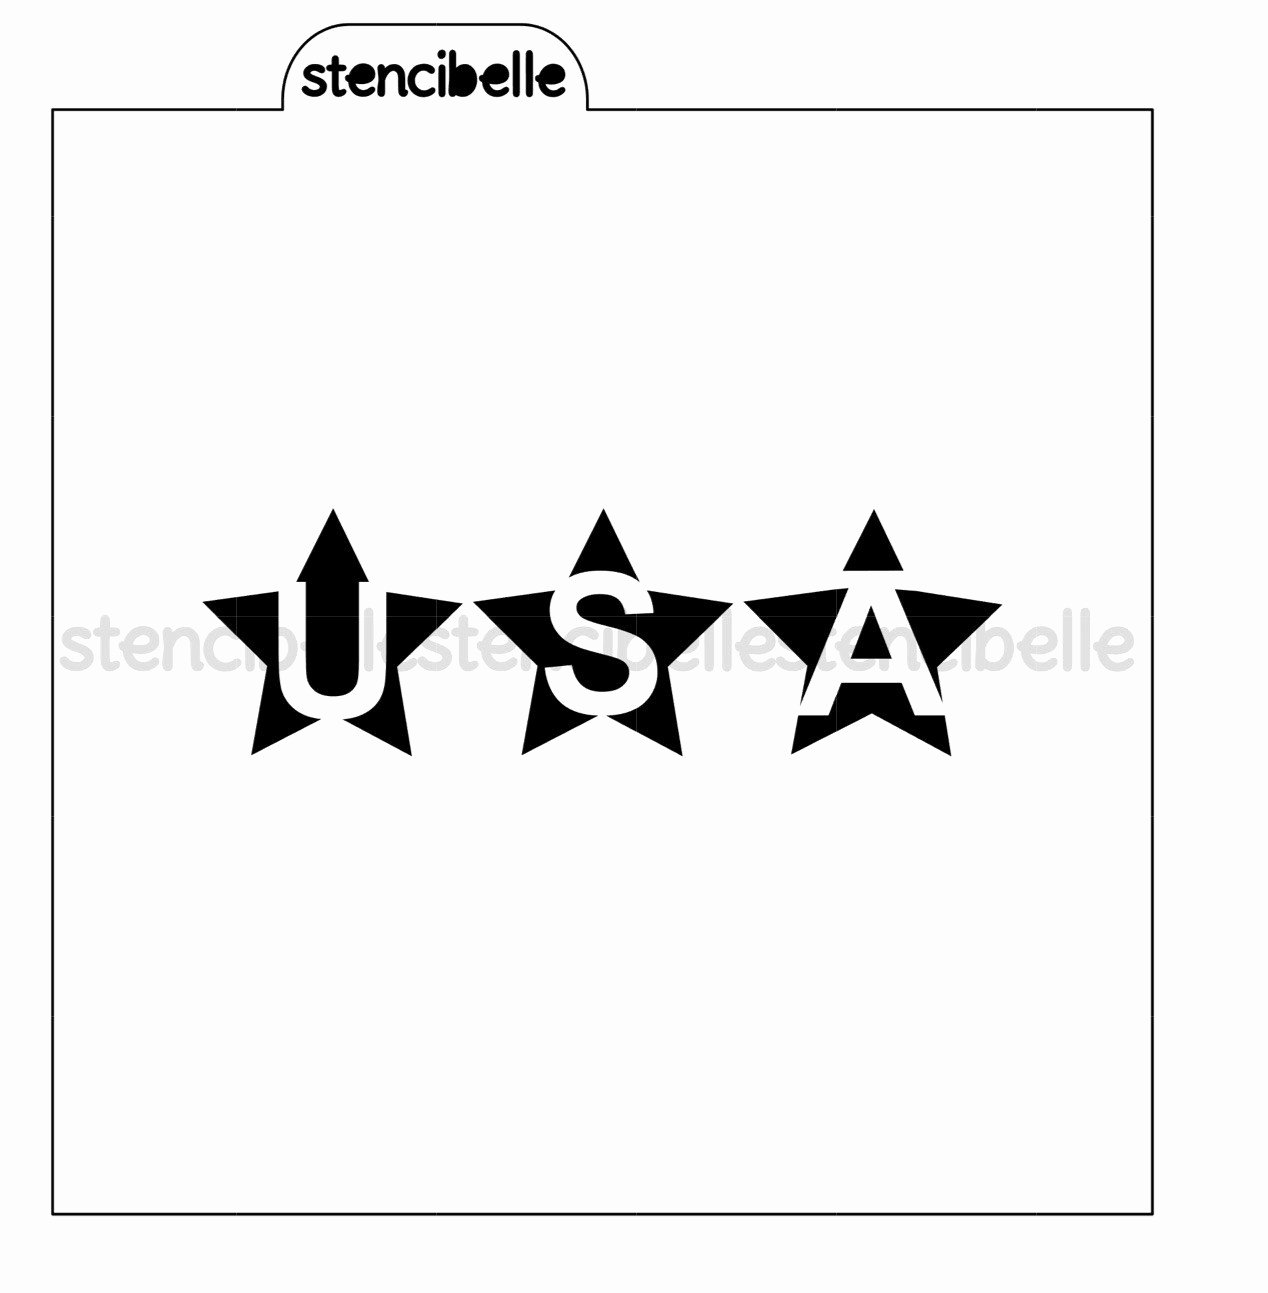 2 Inch Star Stencil Unique Usa Stars Stencil Set 2 Designs – Stencibelle